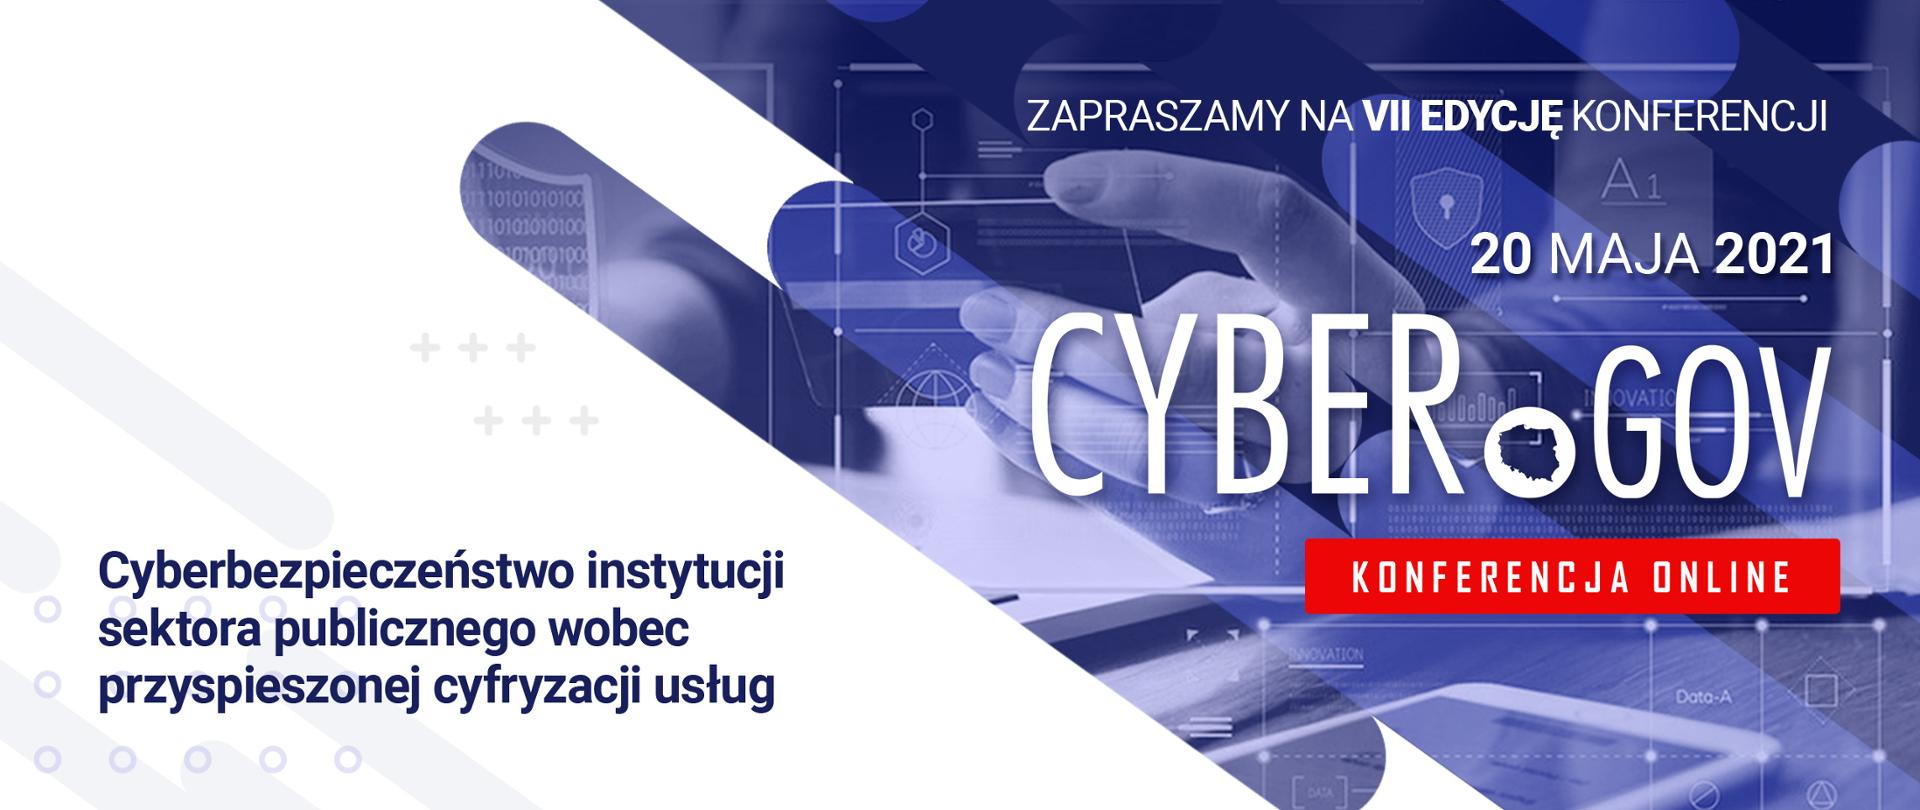 Biało-niebieska grafika wektorowa z tekstem: Zapraszamy na VII edycję konferencji. 20 maja 2021 CyberGOV, konferencja online. Cyberbezpieczeństwo instytucji sektora publicznego wobec przyspieszonej cyfryzacji usług.